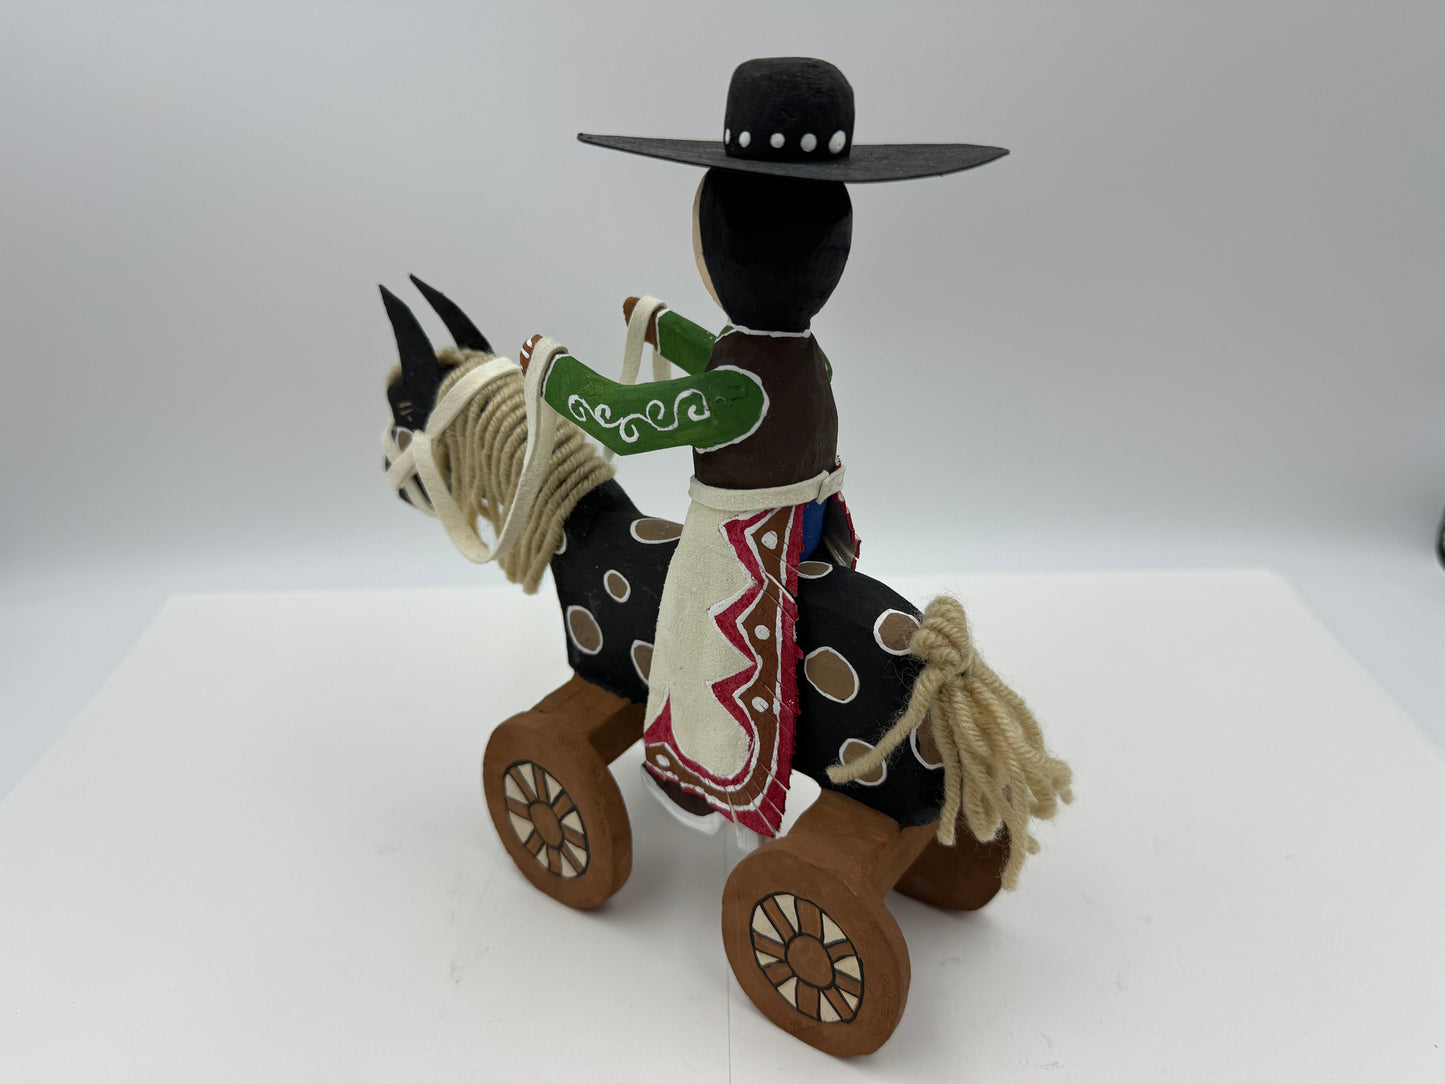 Delbert Buck Wheel Horse Rider #0020